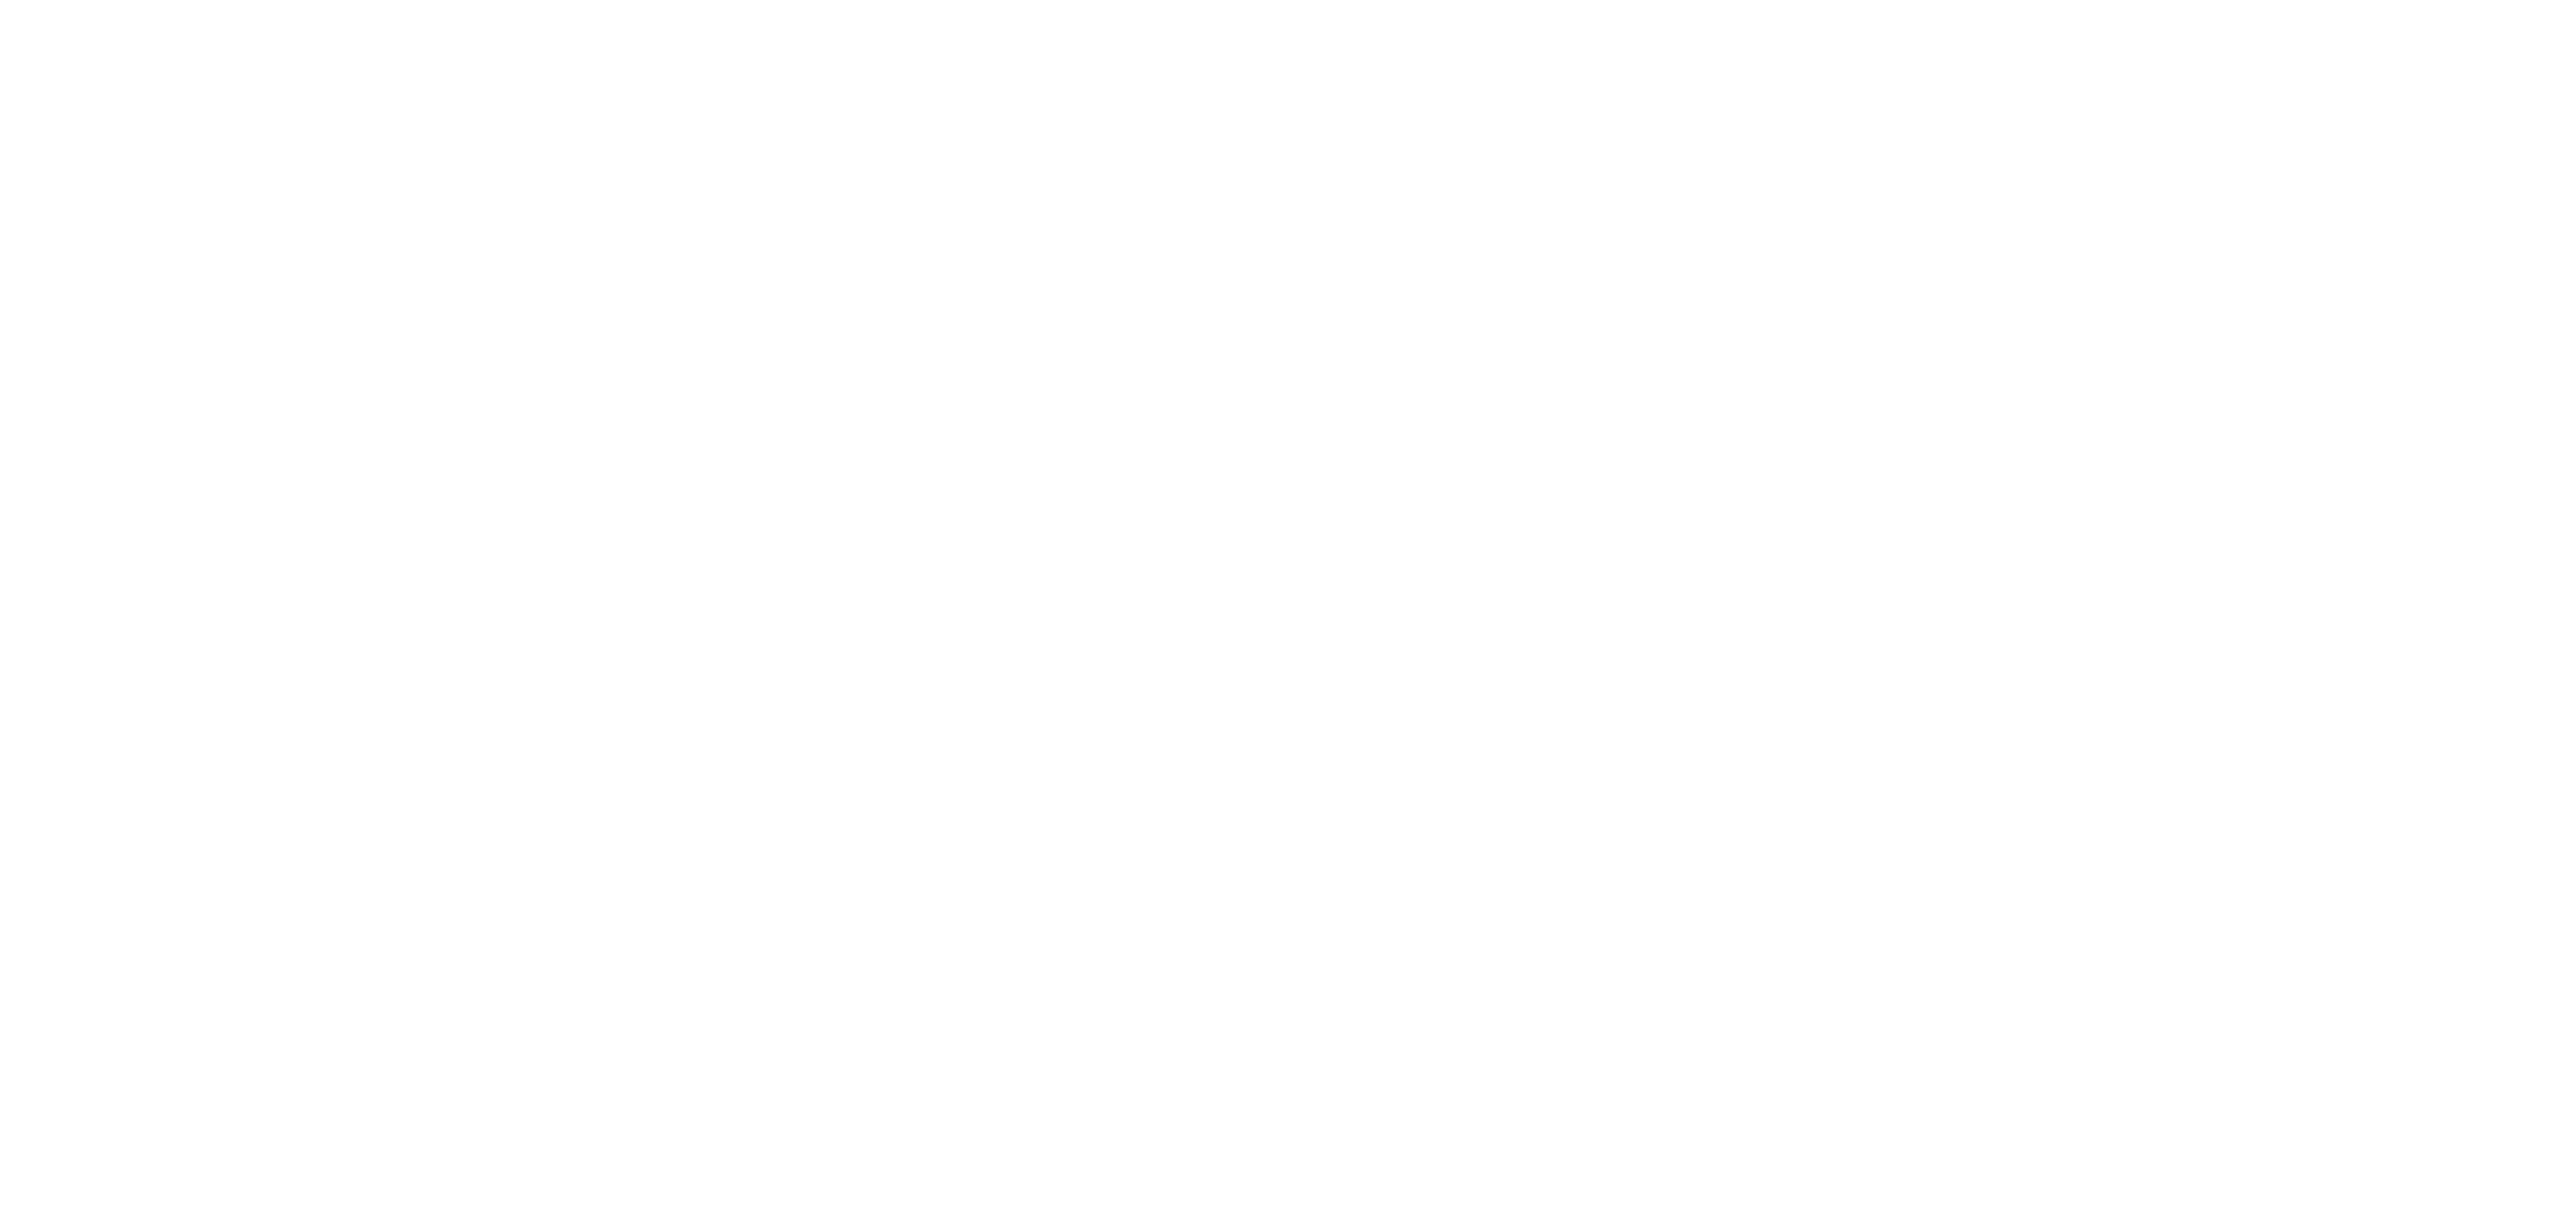 Feeding San Diego logo